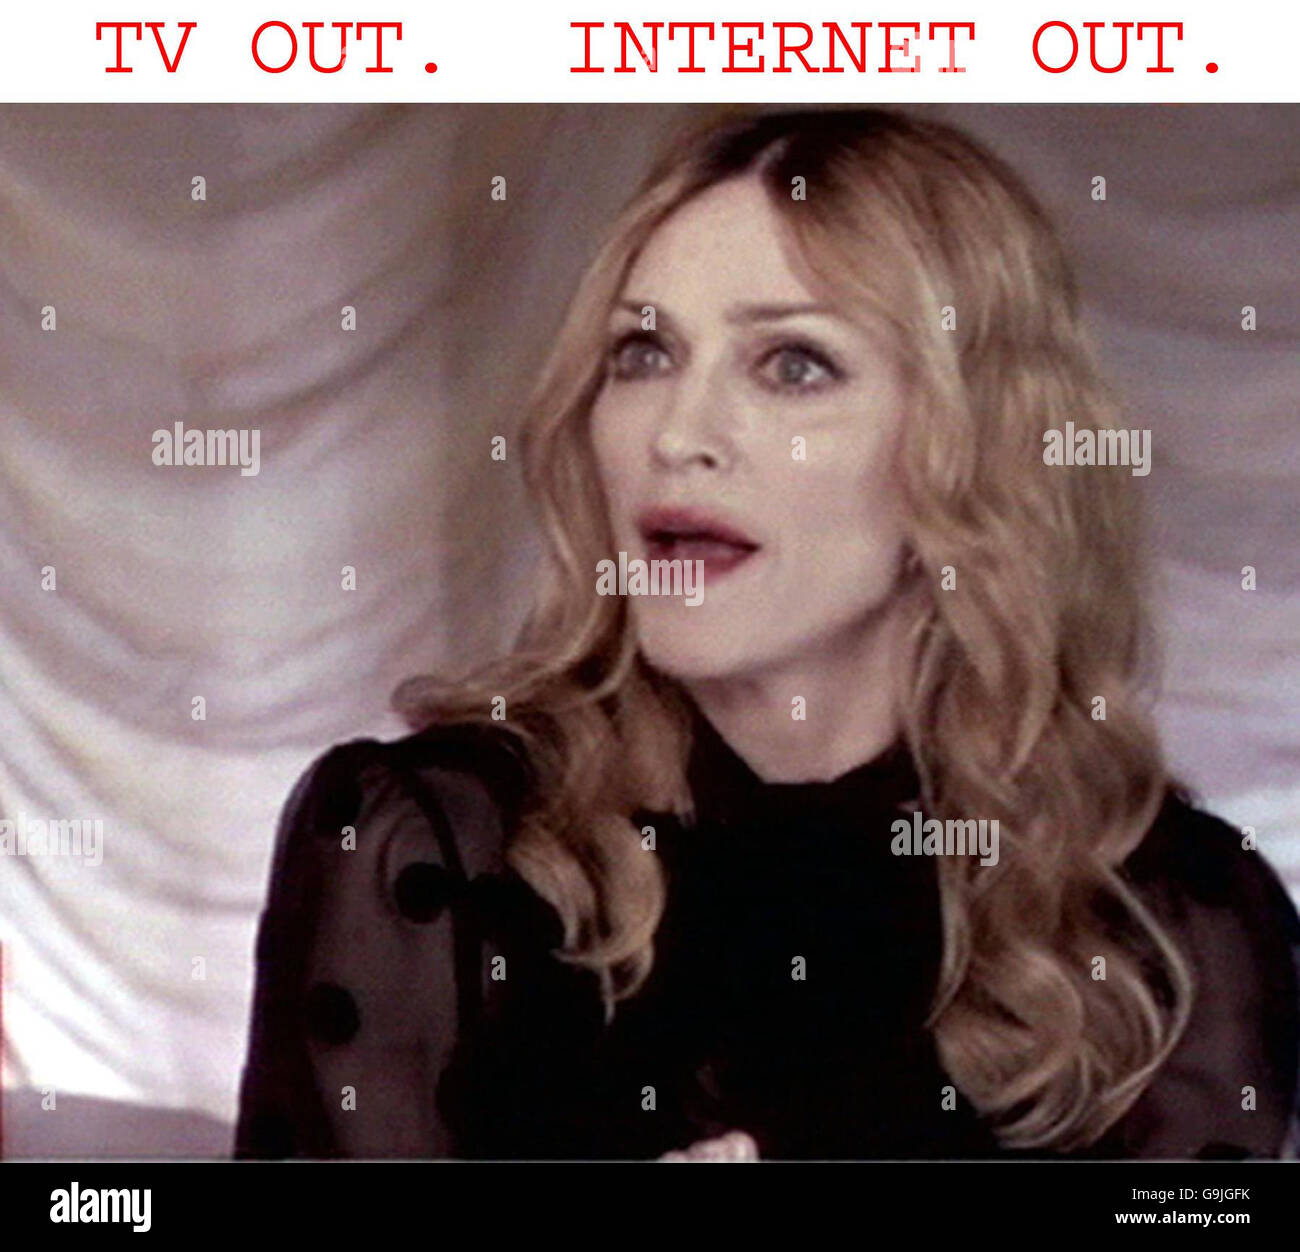 Videograb de la star pop américaine Madonna lors d'une interview sur le programme de télévision de la BBC Newsnight. Banque D'Images